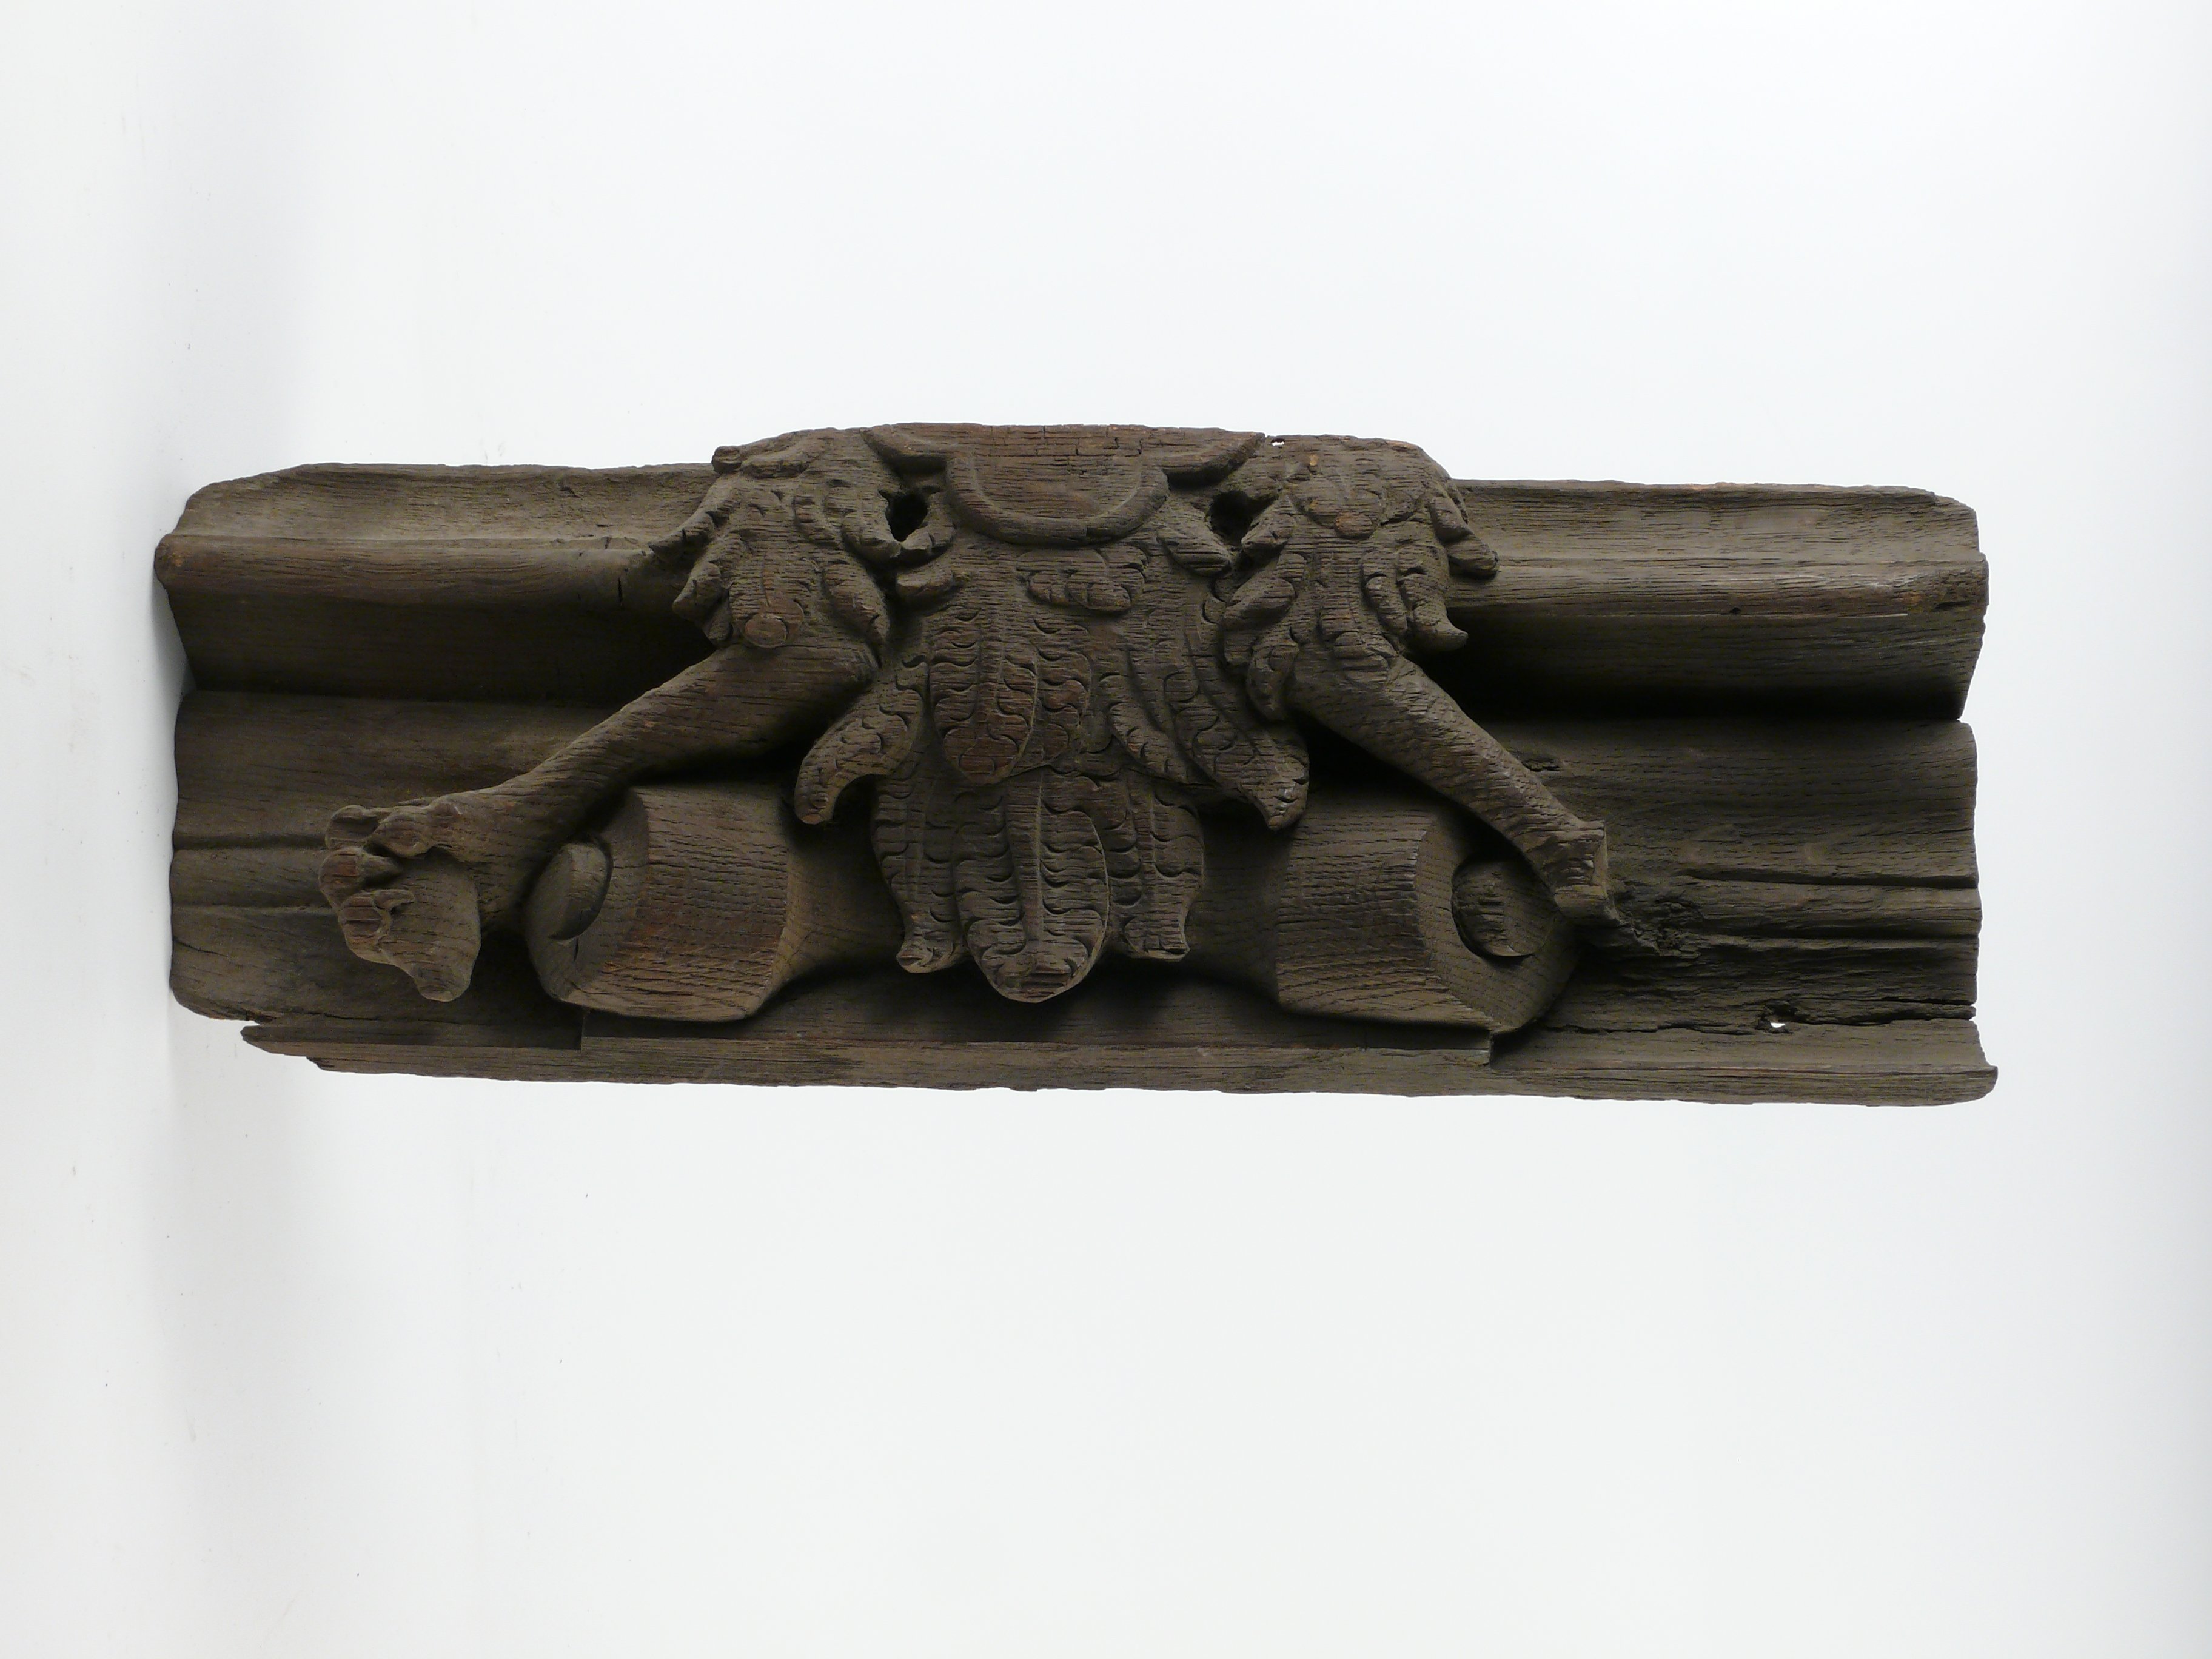 Gesimsstück mit Teil eines Adlers (Historisches Museum der Pfalz - Speyer CC BY)